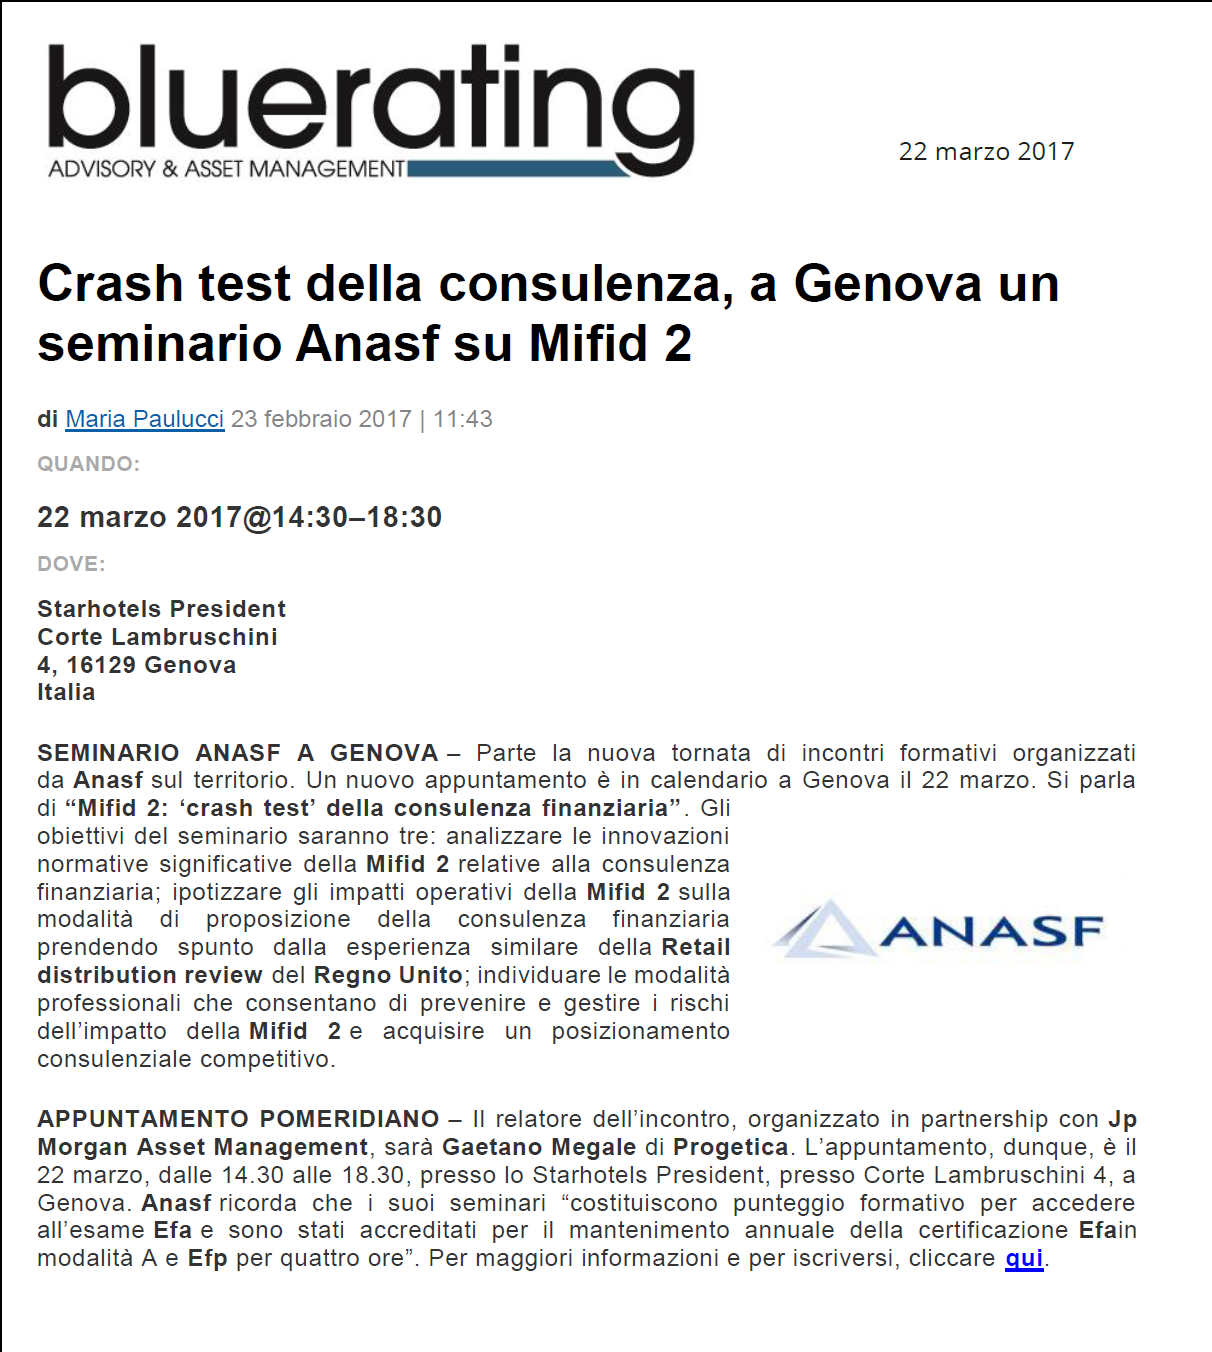 Crash test della consulenza, a Genova un seminario Anasf su Mifid 2